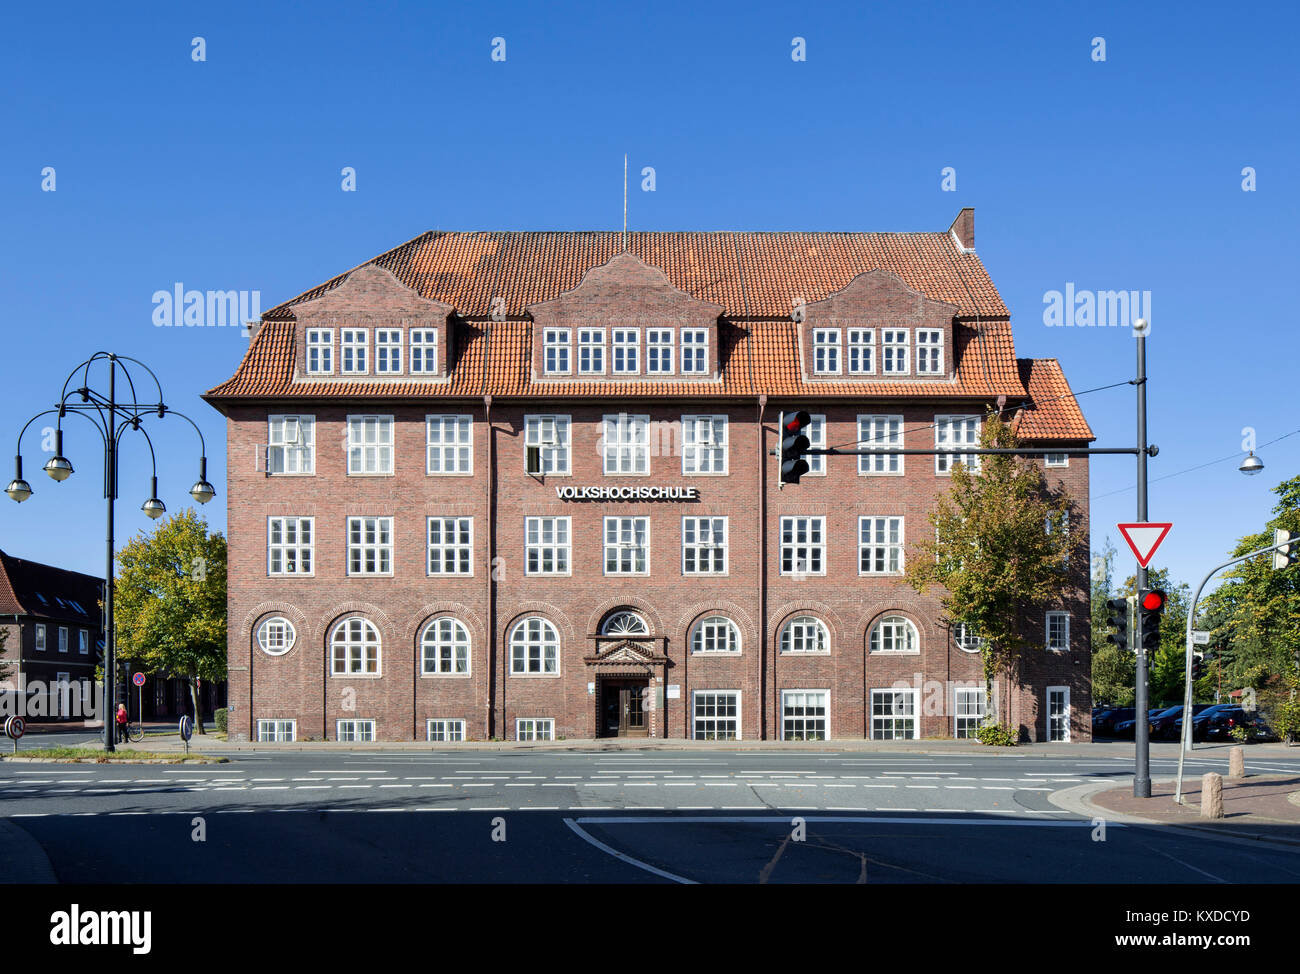 Ehemalige berufliche Schule, heute Volkshochschule, Cuxhaven, Niedersachsen, Deutschland Stockfoto